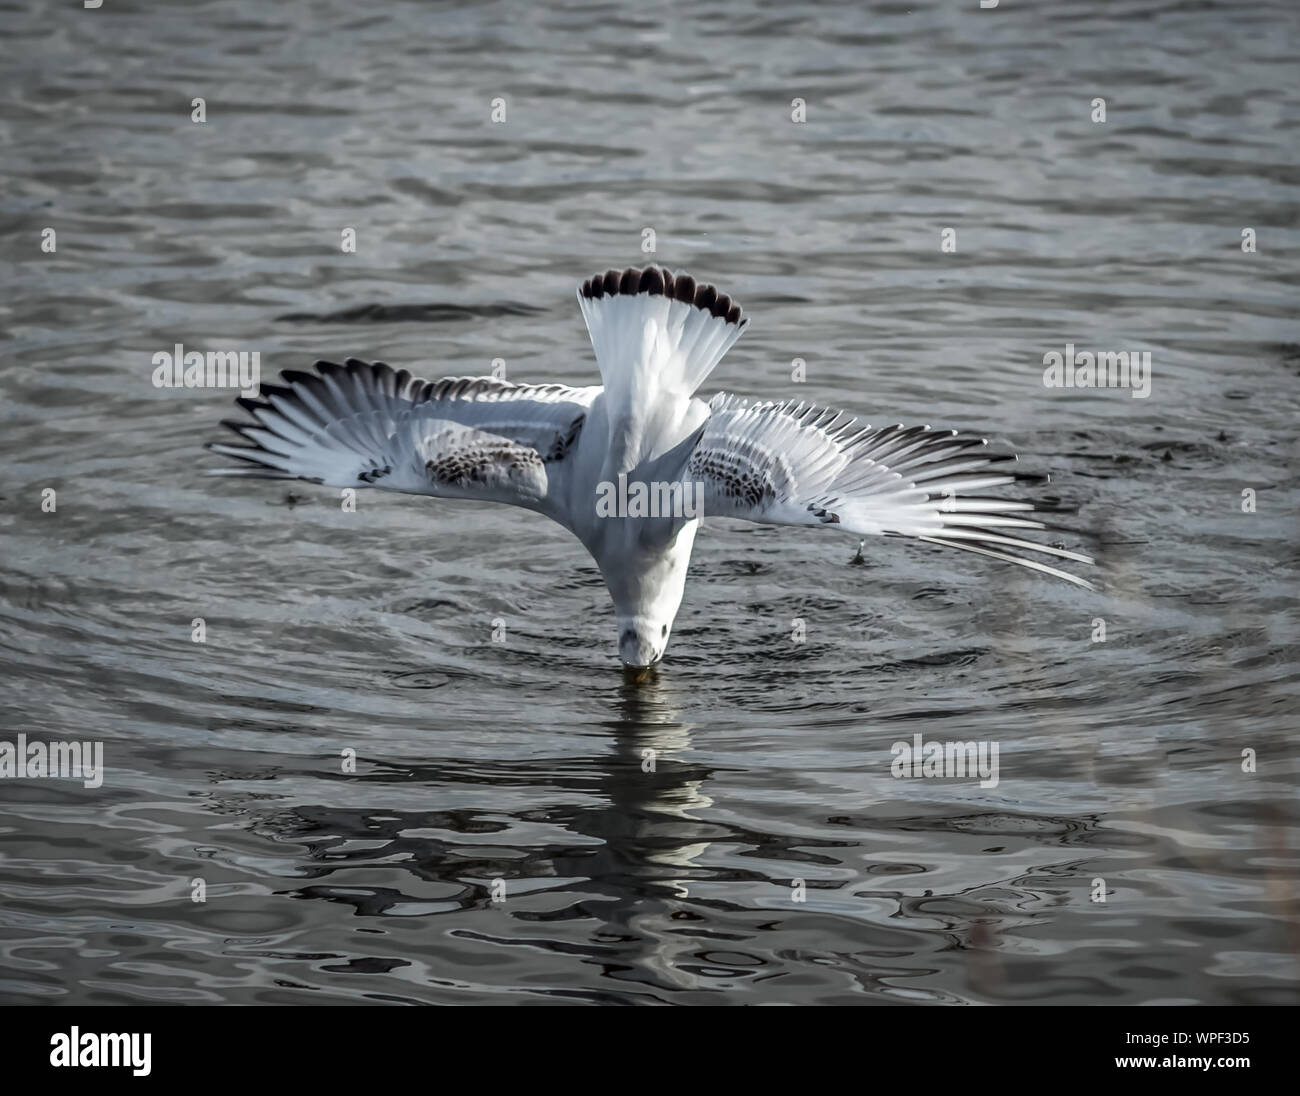 Pesca en el lago de aves Foto de stock